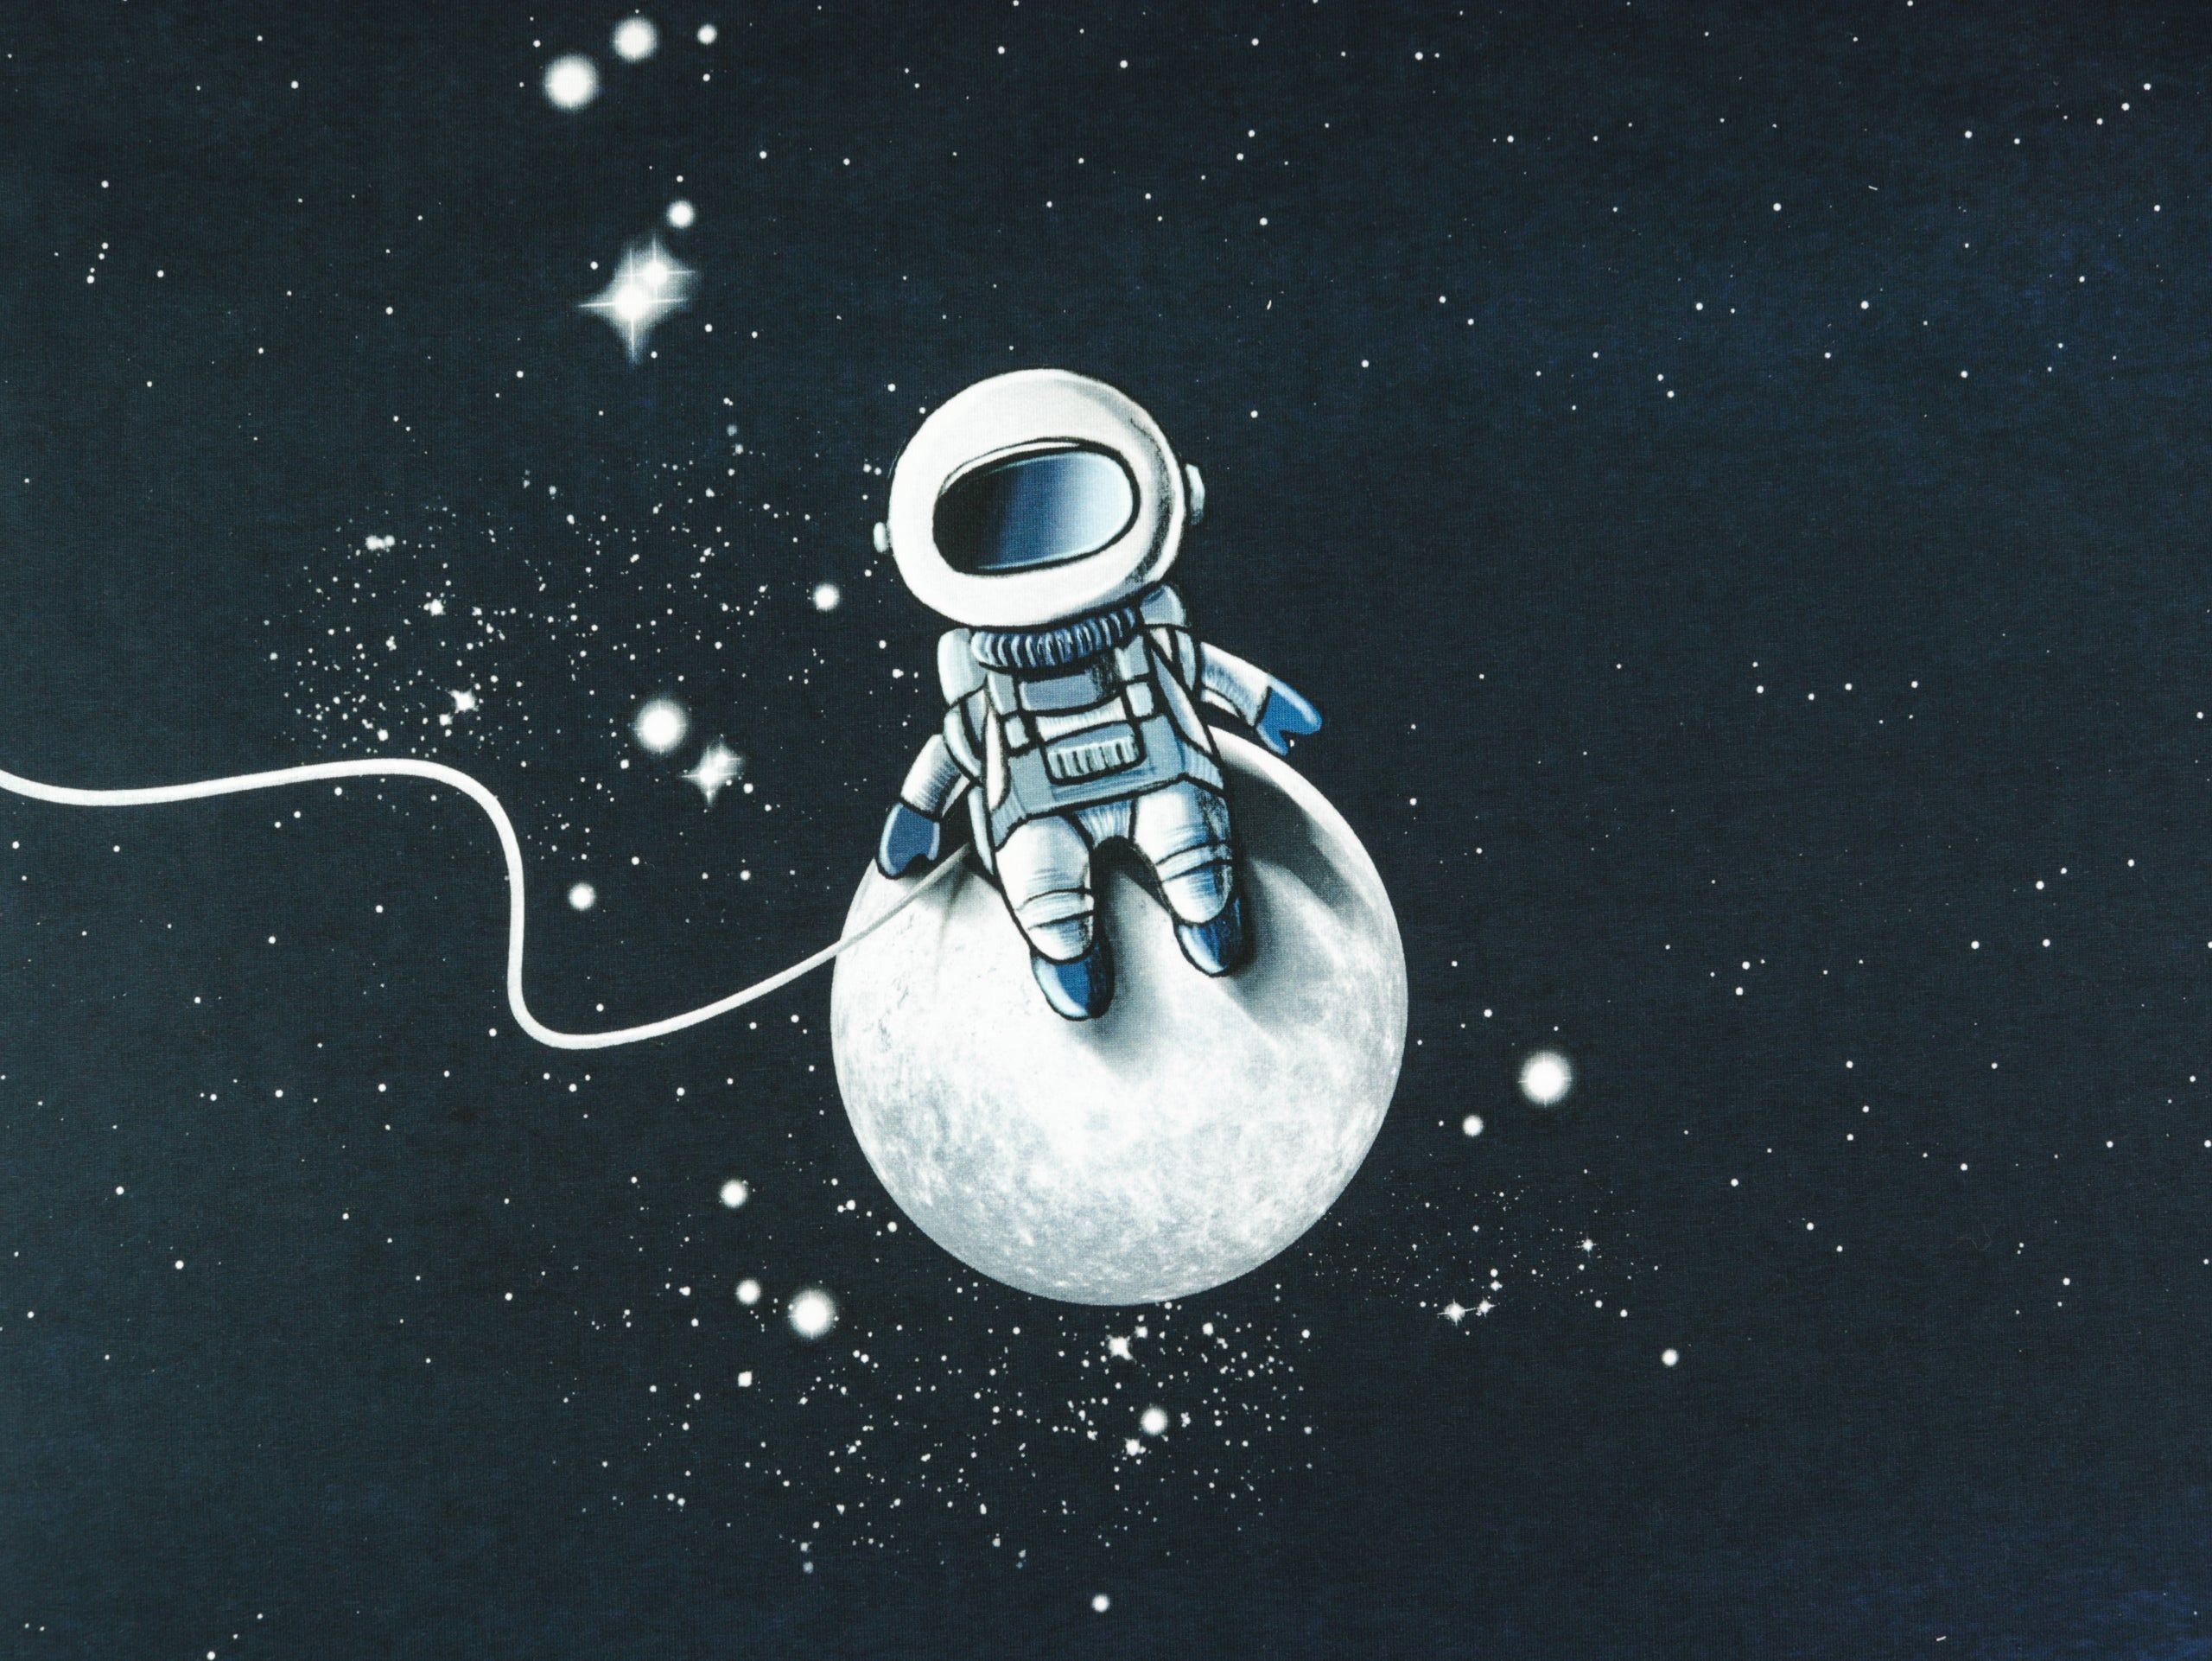  Farbige Kreise Hintergrundbild 2560x1922. French Terry Moonwalker by Thorsten Berger Panel 75cm hüpfende Komma